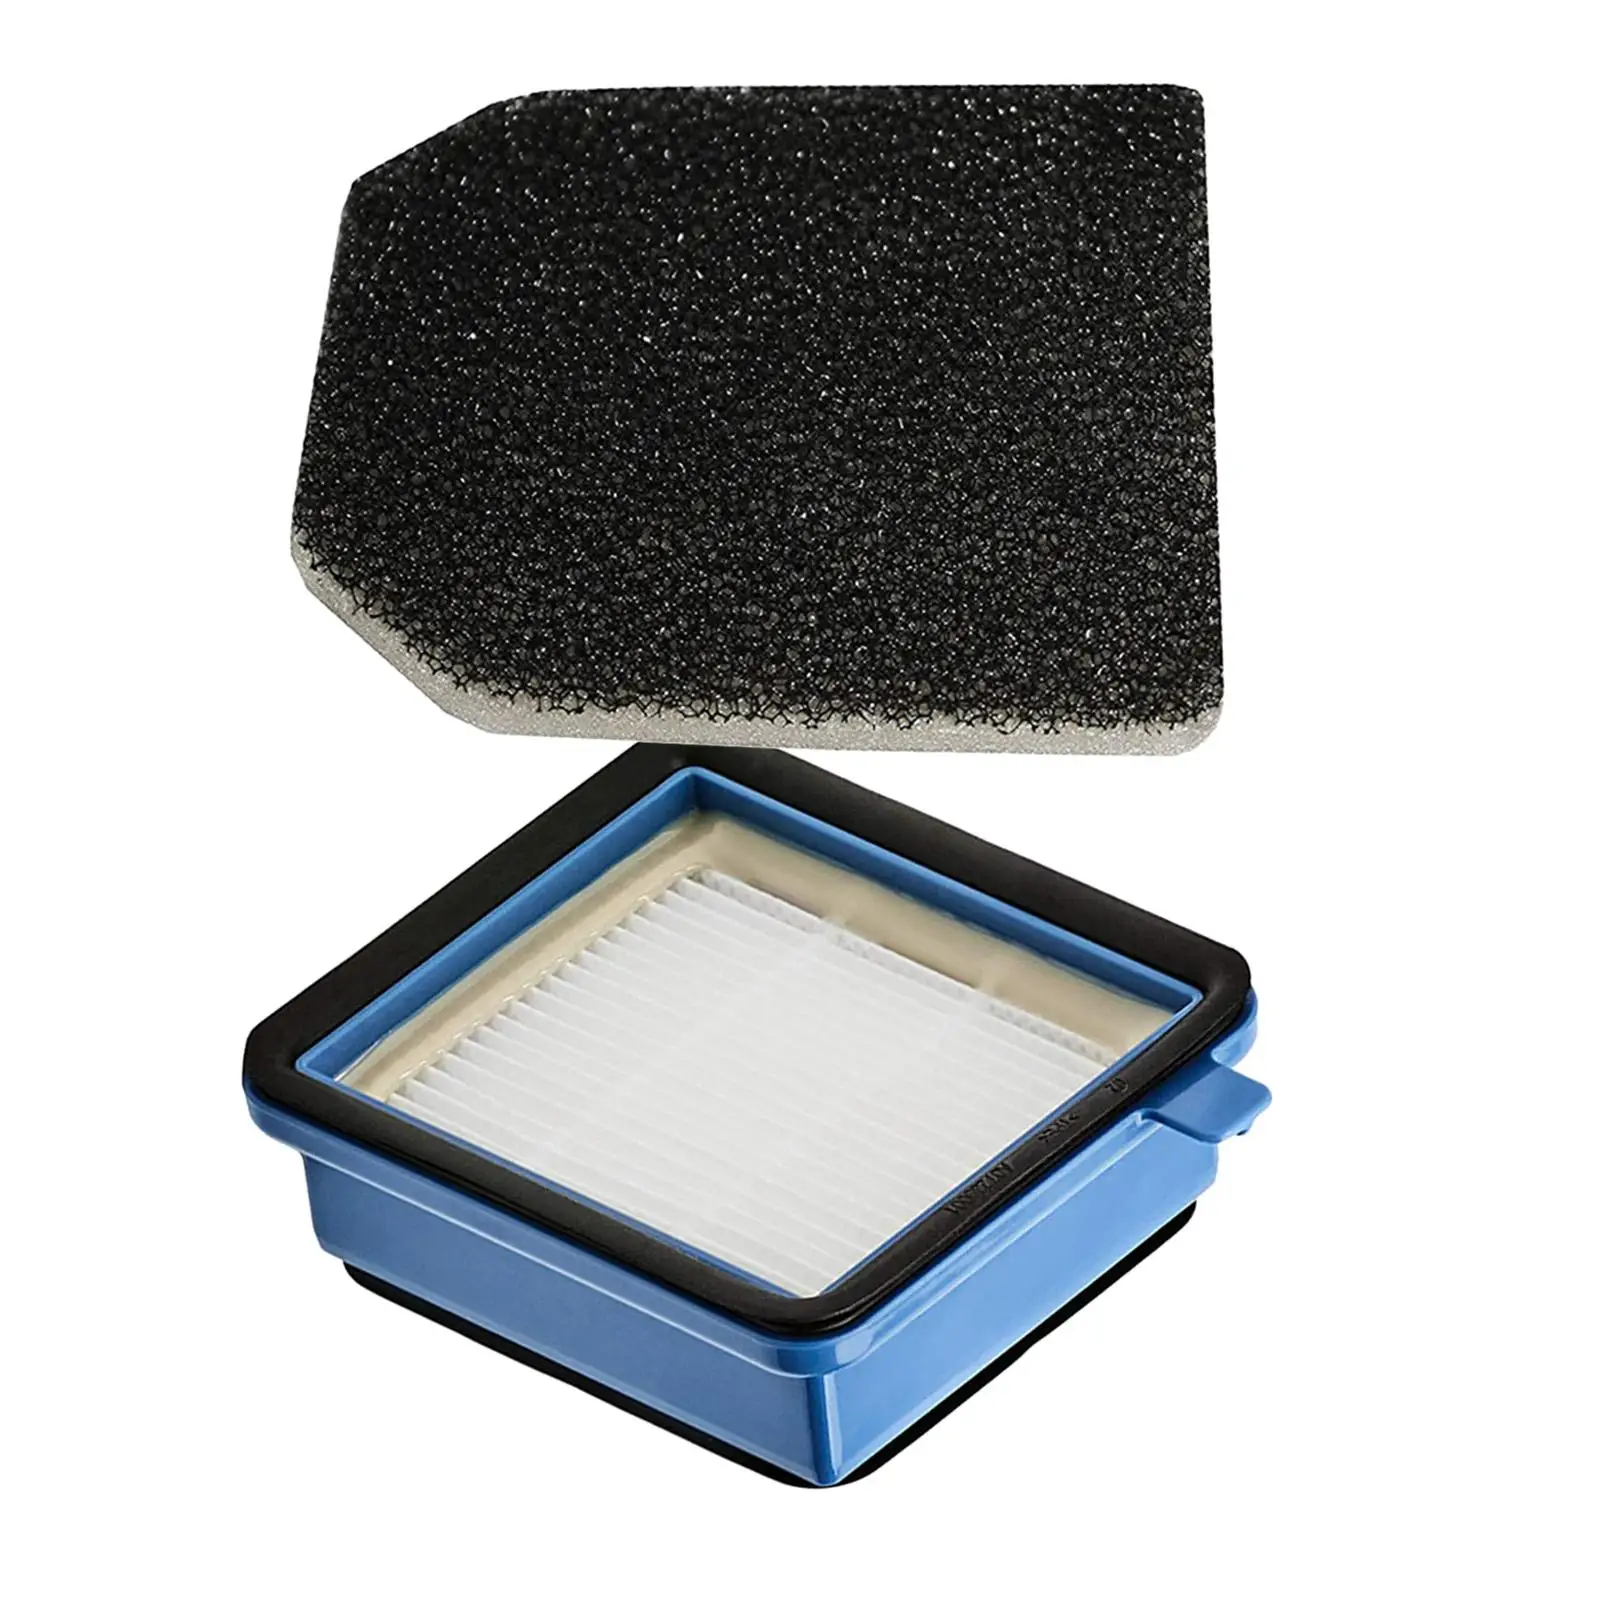 Фильтры для бытовых пылесосов Заменяют Запчасти, Профессиональные Аксессуары для пылесосов QX7 QX6